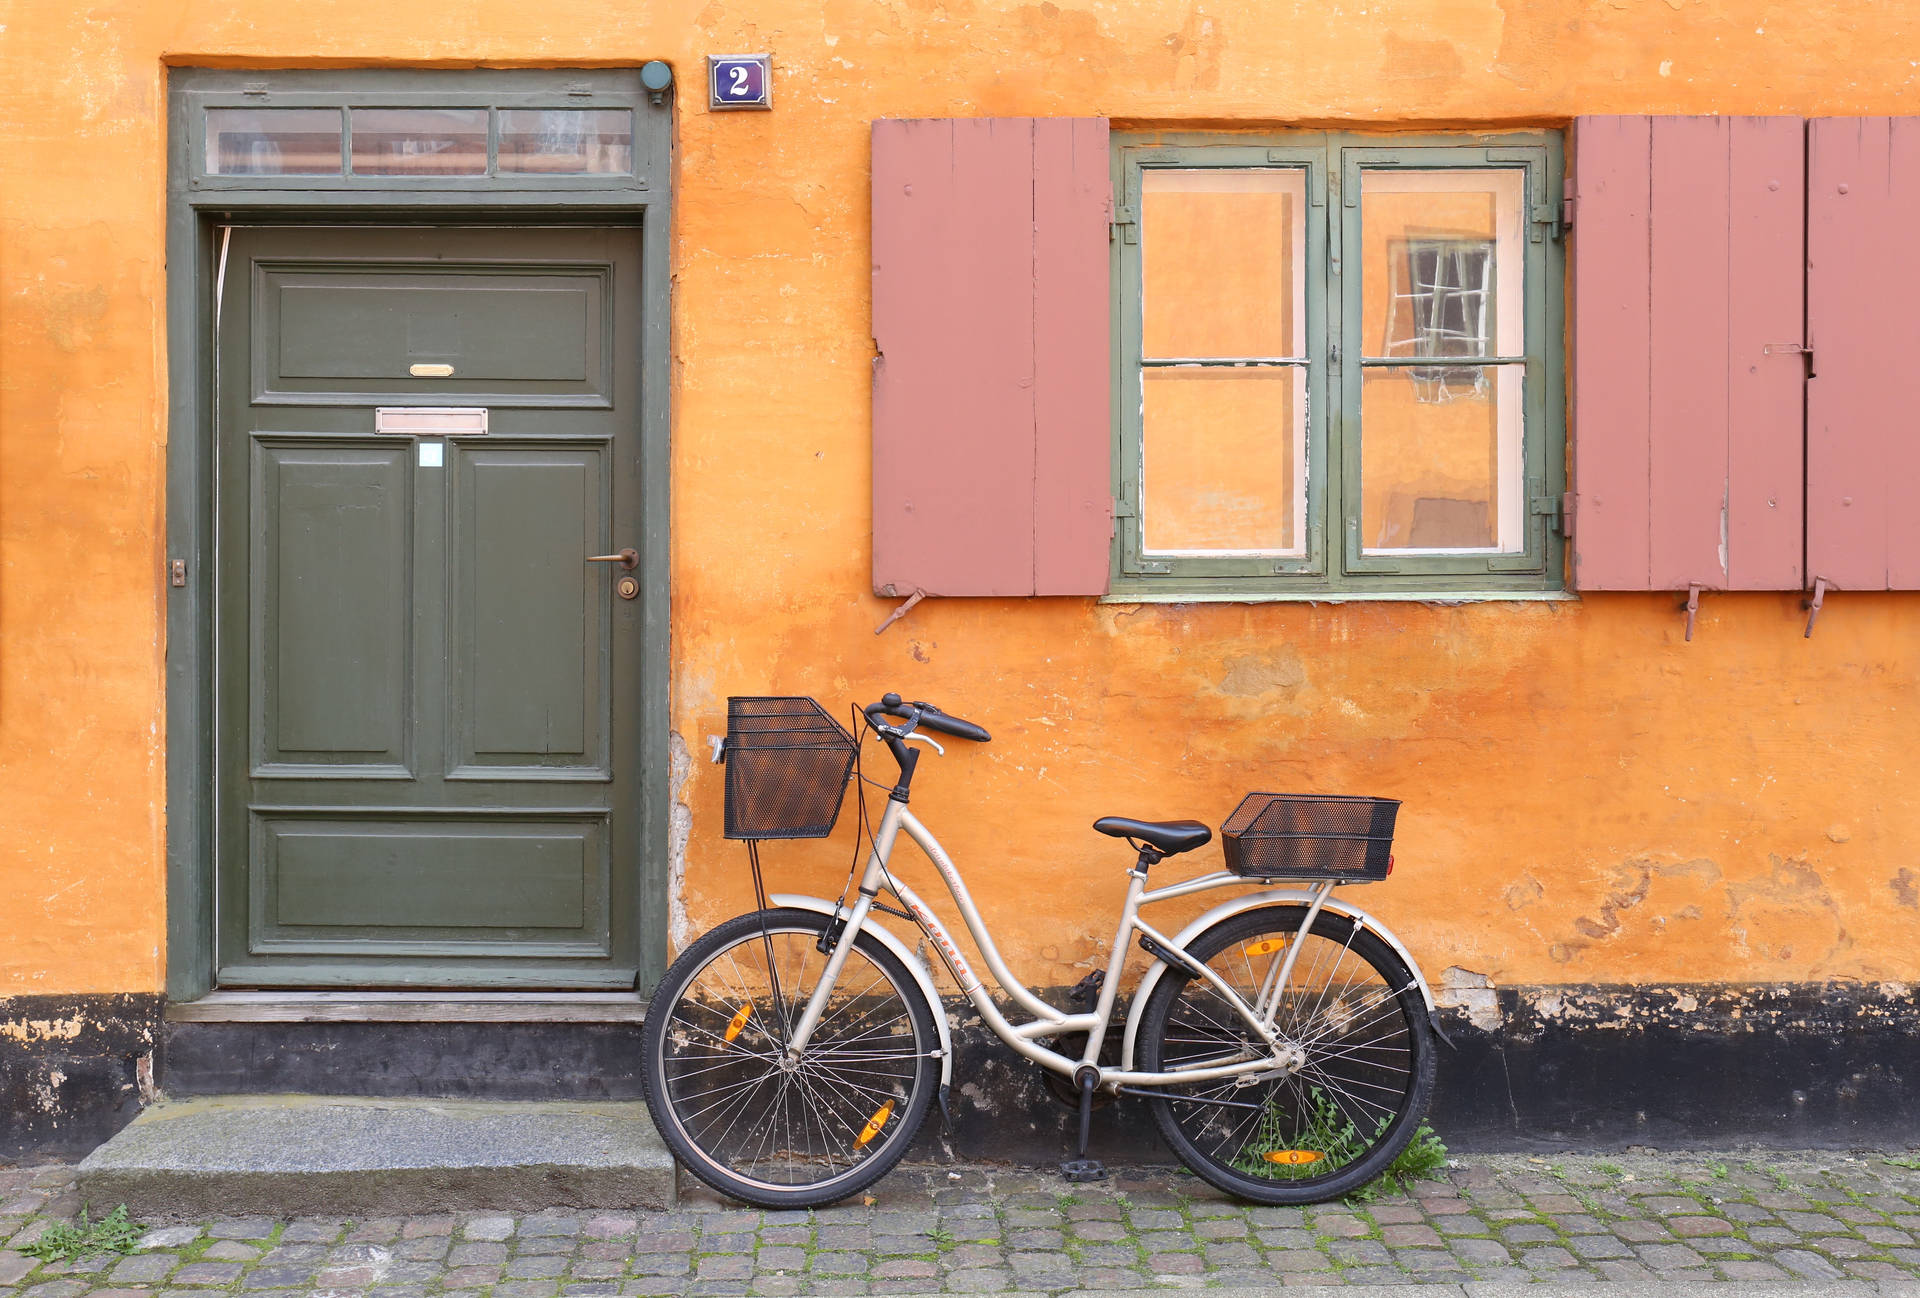 Japanese Bike In Orange Wall